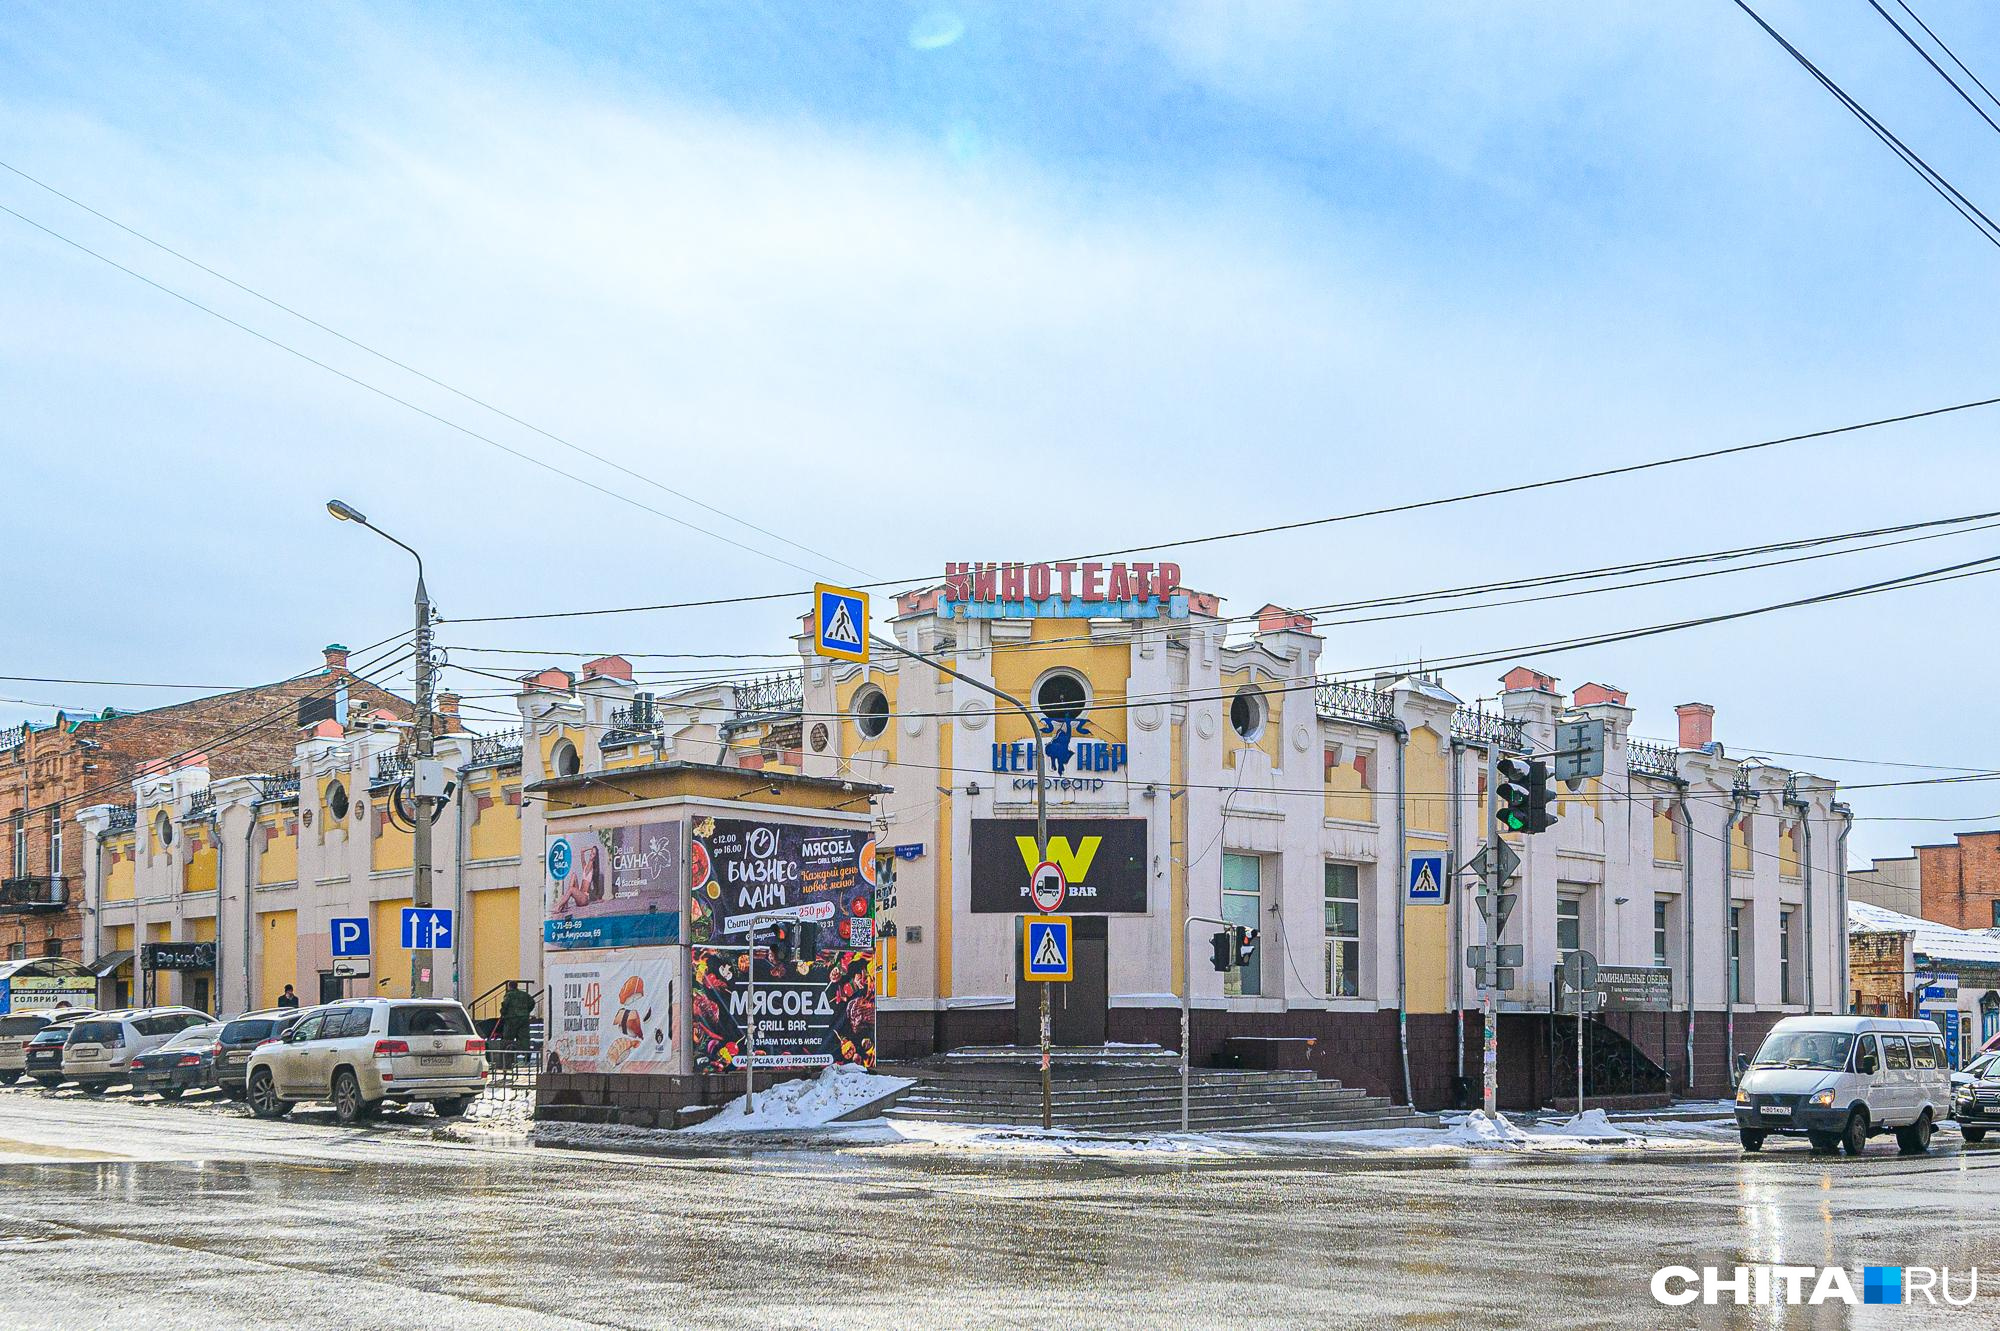 Кинотеатр «Центавр» в Чите, закрытый на реконструкцию, откроют в марте